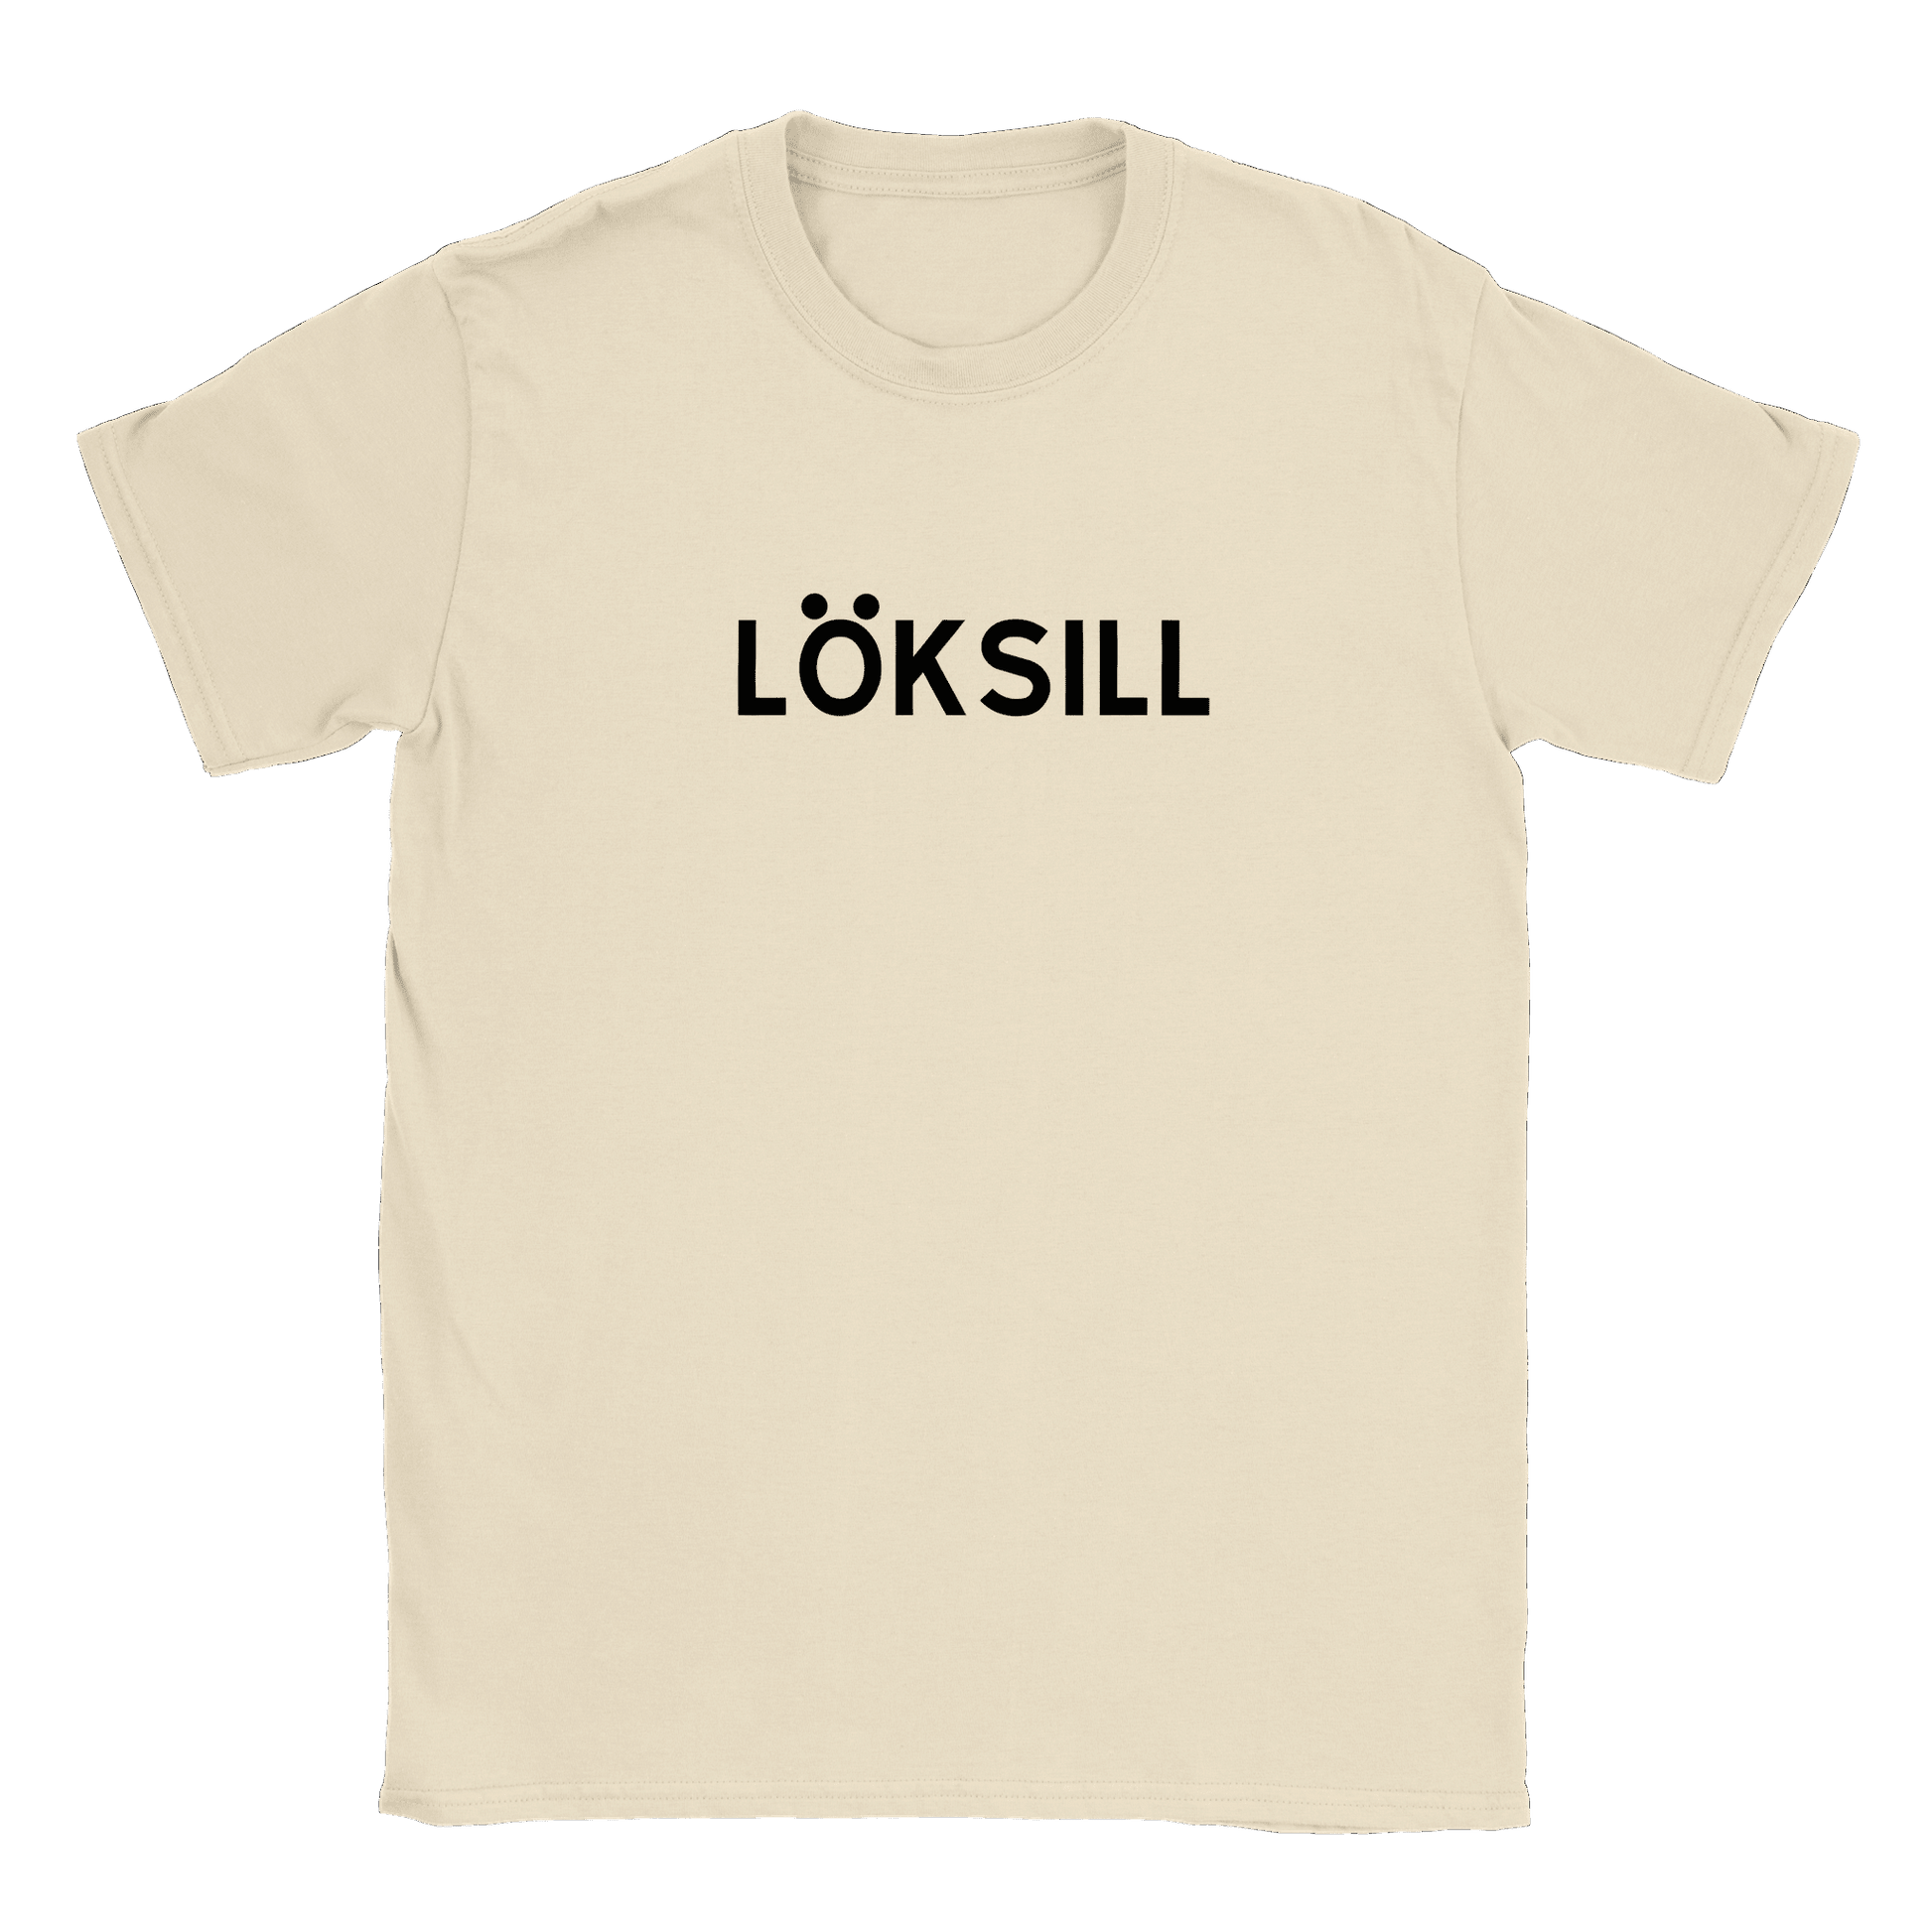 Löksill - T-shirt Natural